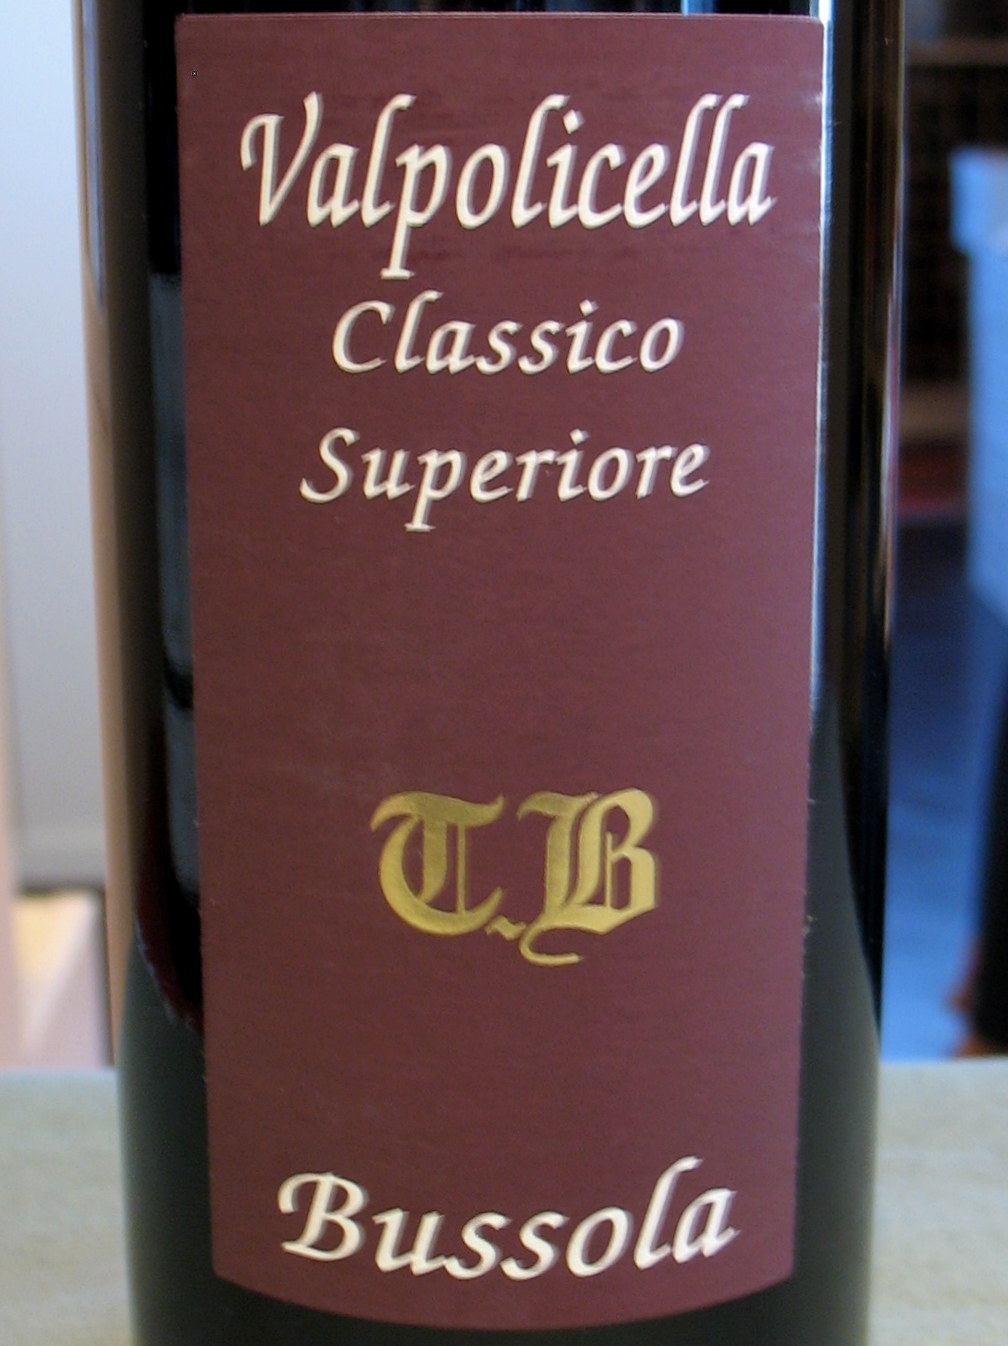 Bussola Valpolicella Classico Superiore 'TB' 2009